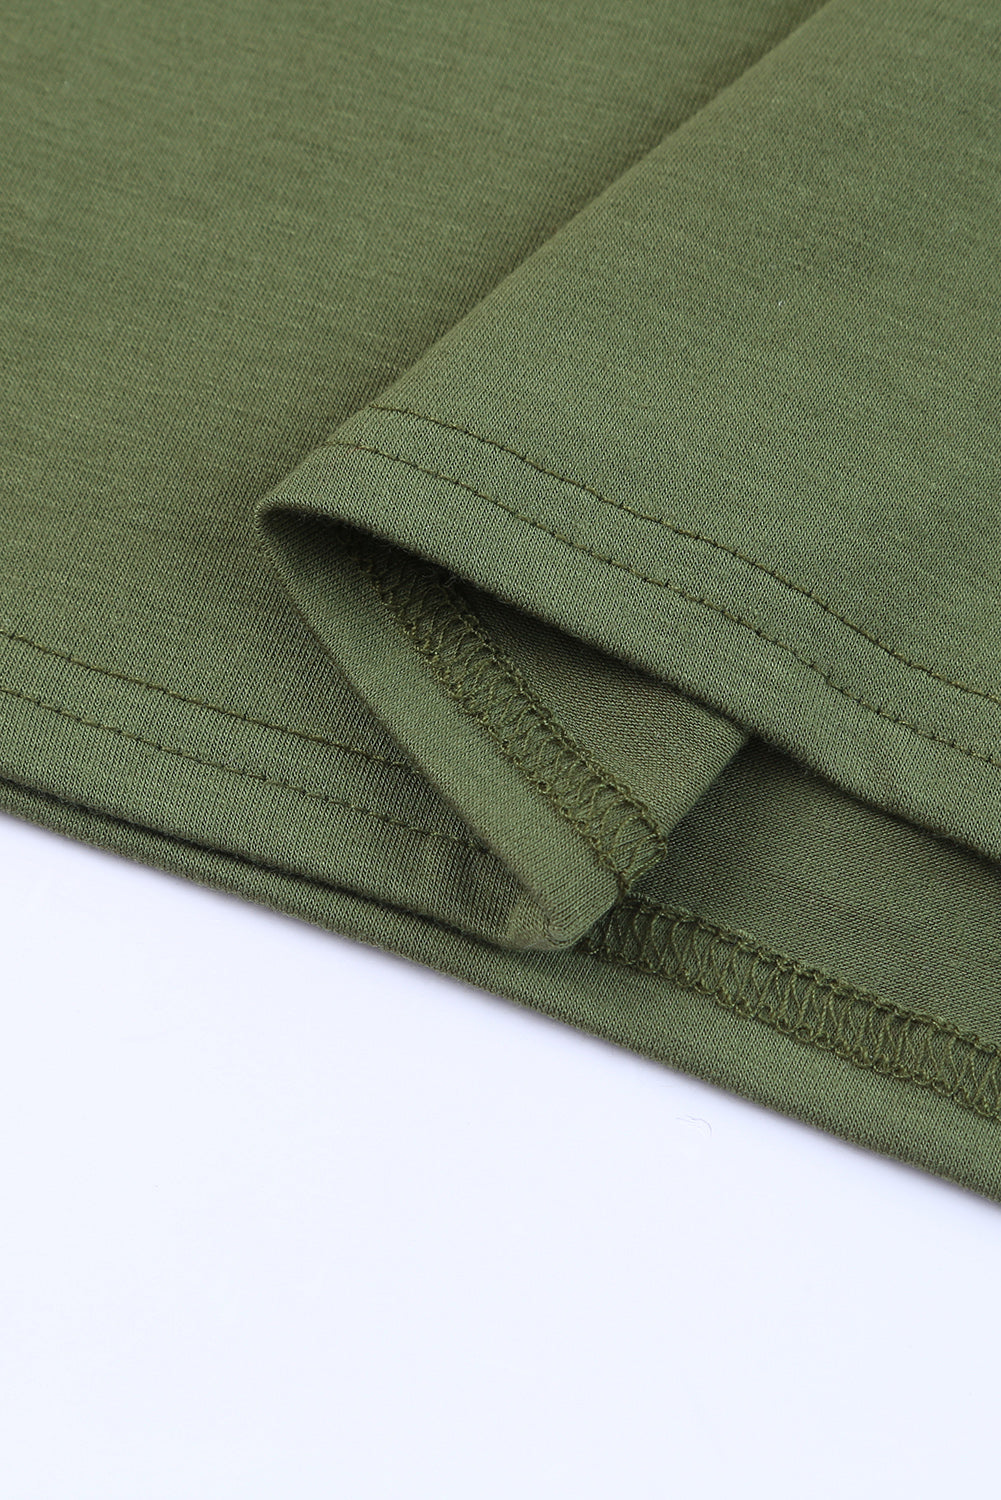 Haut tunique vert clair à manches courtes et poches latérales